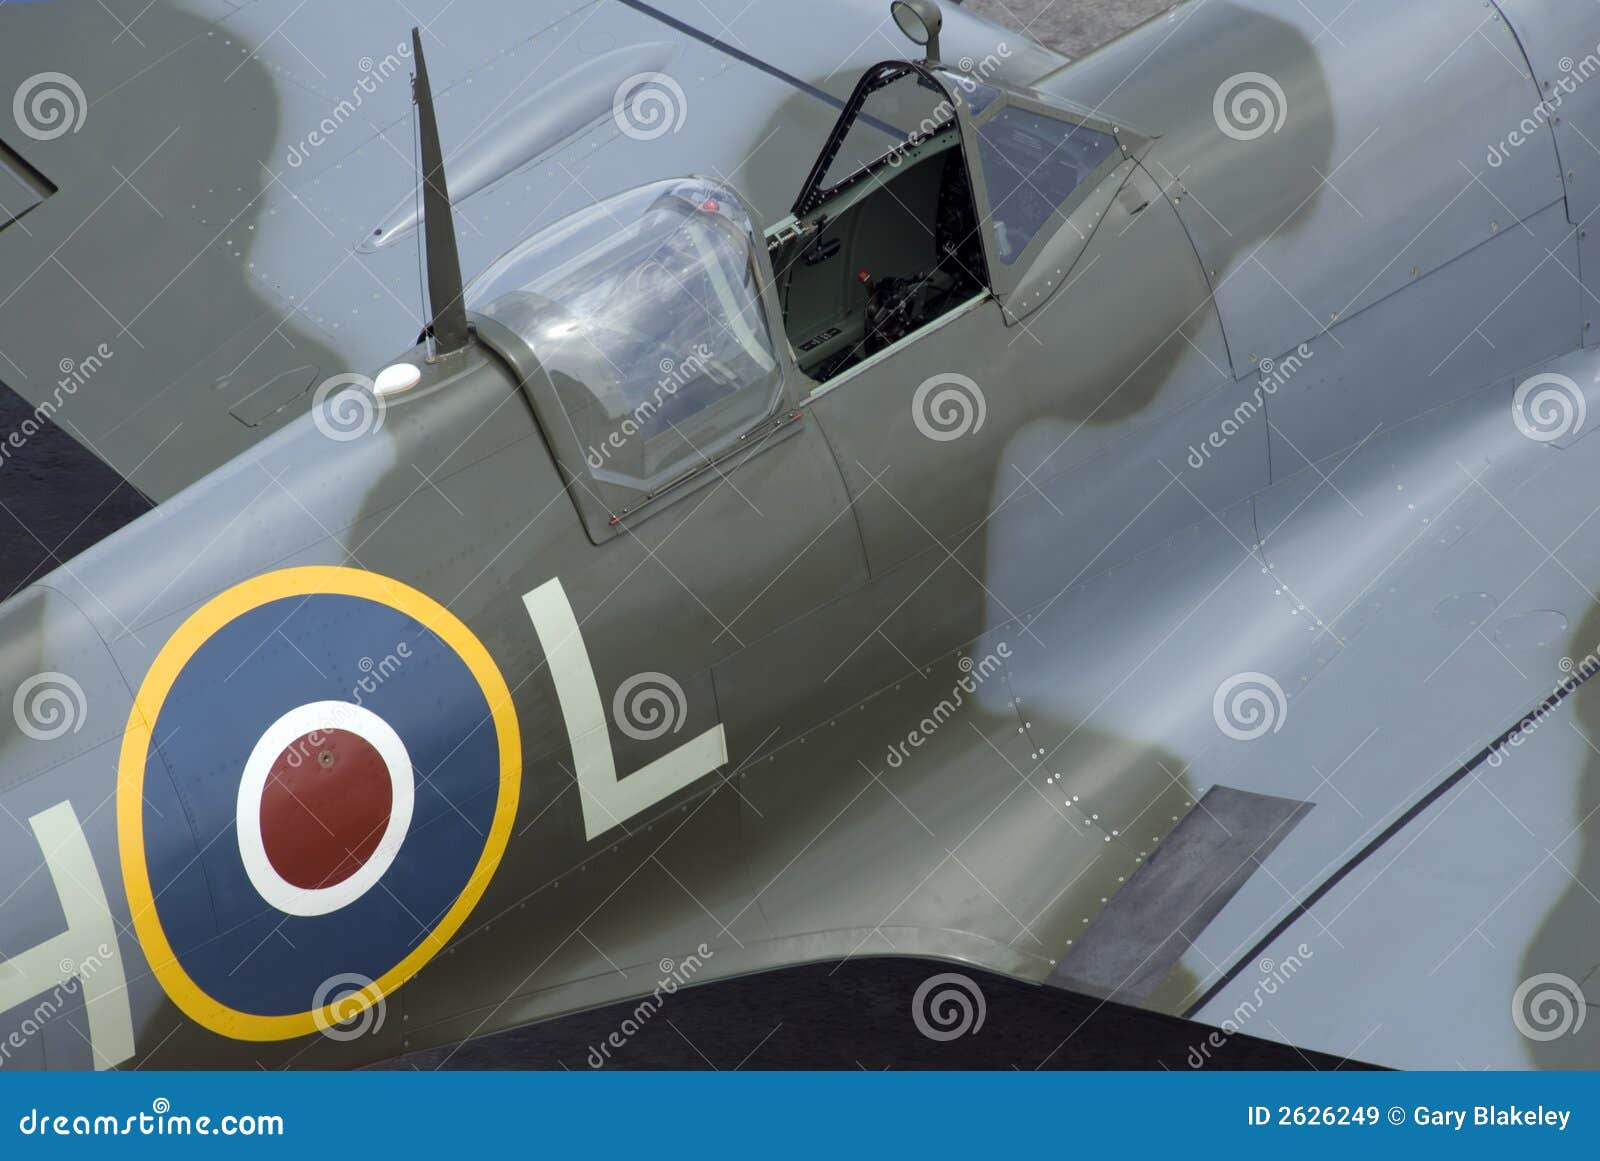 spitfire-cockpit-2626249.jpg